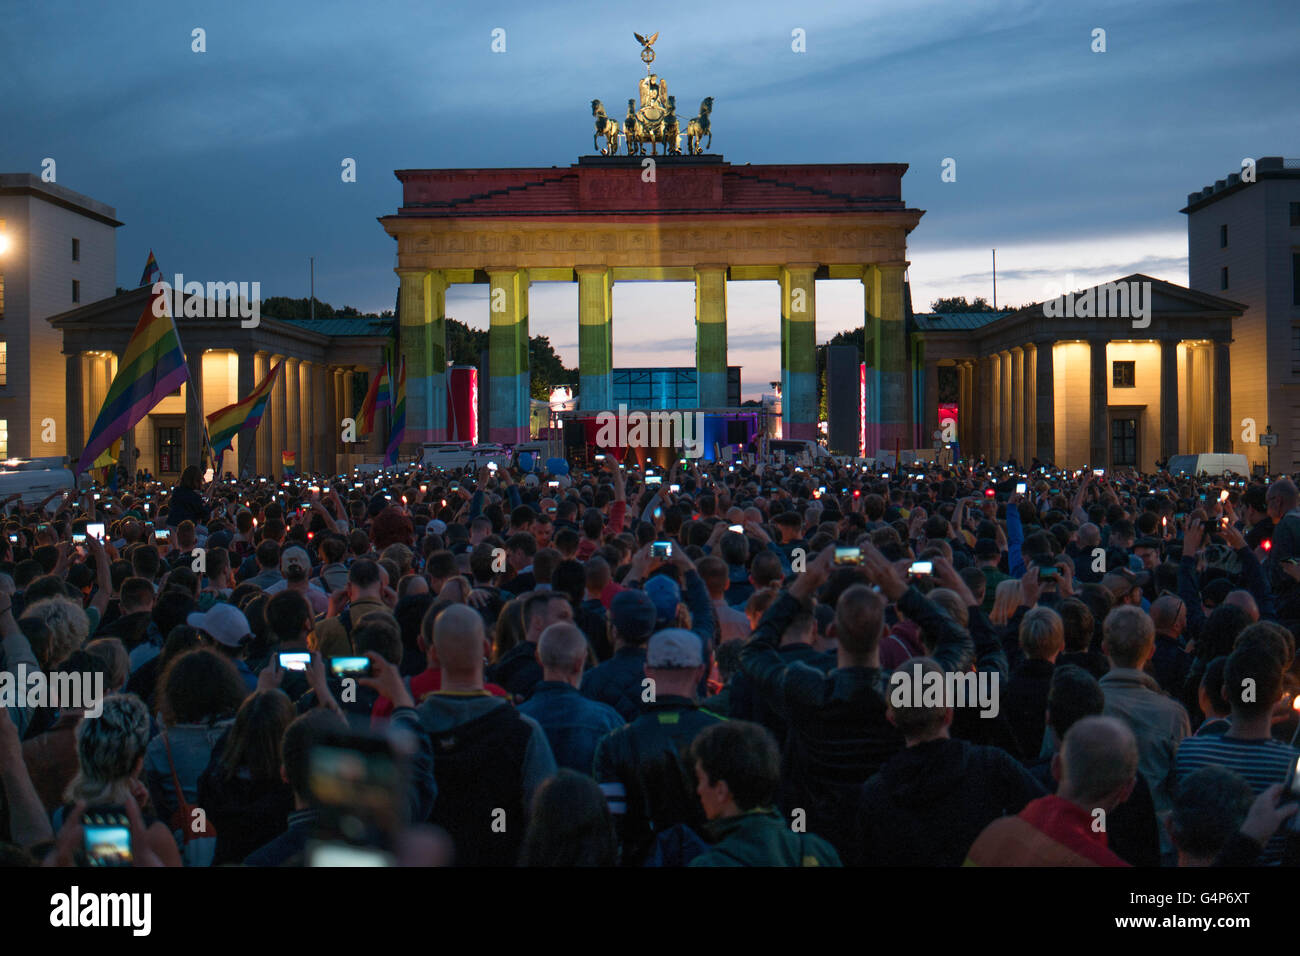 Berlino, Germania. Il 18 giugno, 2016. Molte persone prendono parte a questa veglia " Berlino per Orlando" presso la Porta di Brandeburgo (che è stata accesa in arcobaleno di colori) per commemorare il 49 vittime del tiro di Orlando a Berlino (Germania), 18 giugno 2016. Foto: Joerg Carstensen/dpa/Alamy Live News Foto Stock